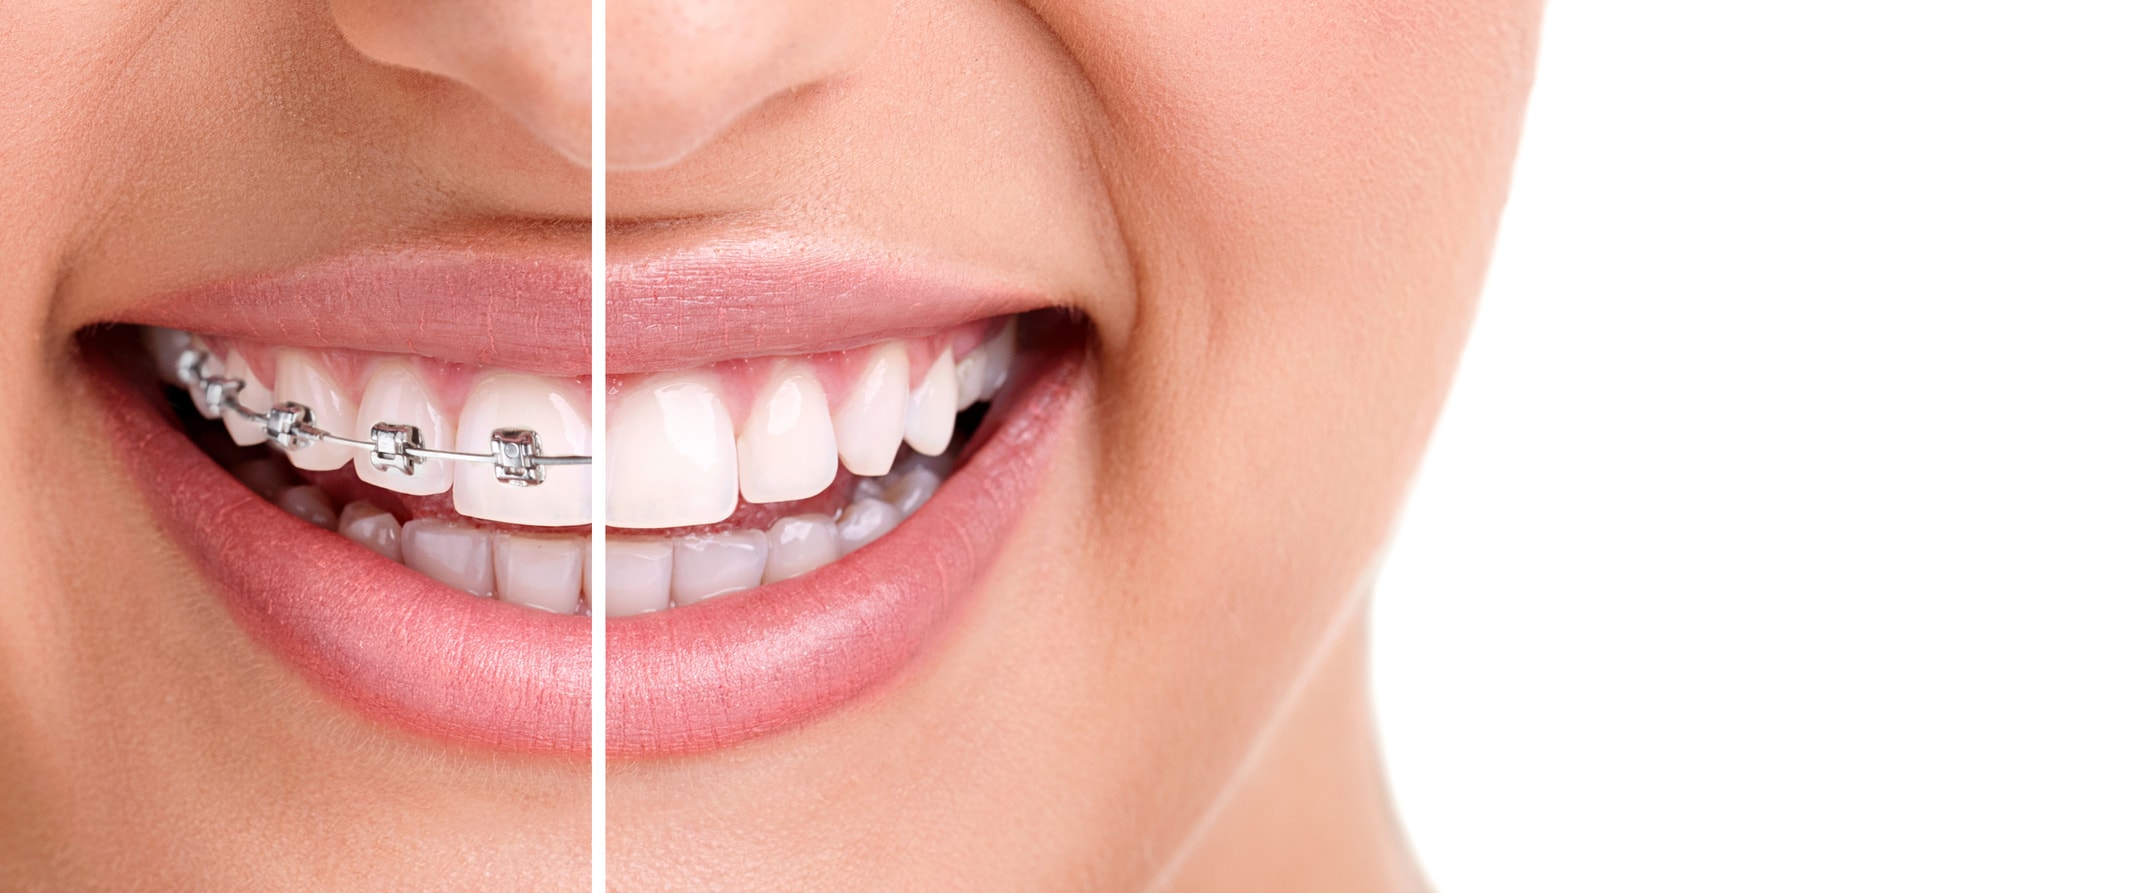 اصلاح نافرمی دندان ها با ارتودنسی دکتر آزادمنش